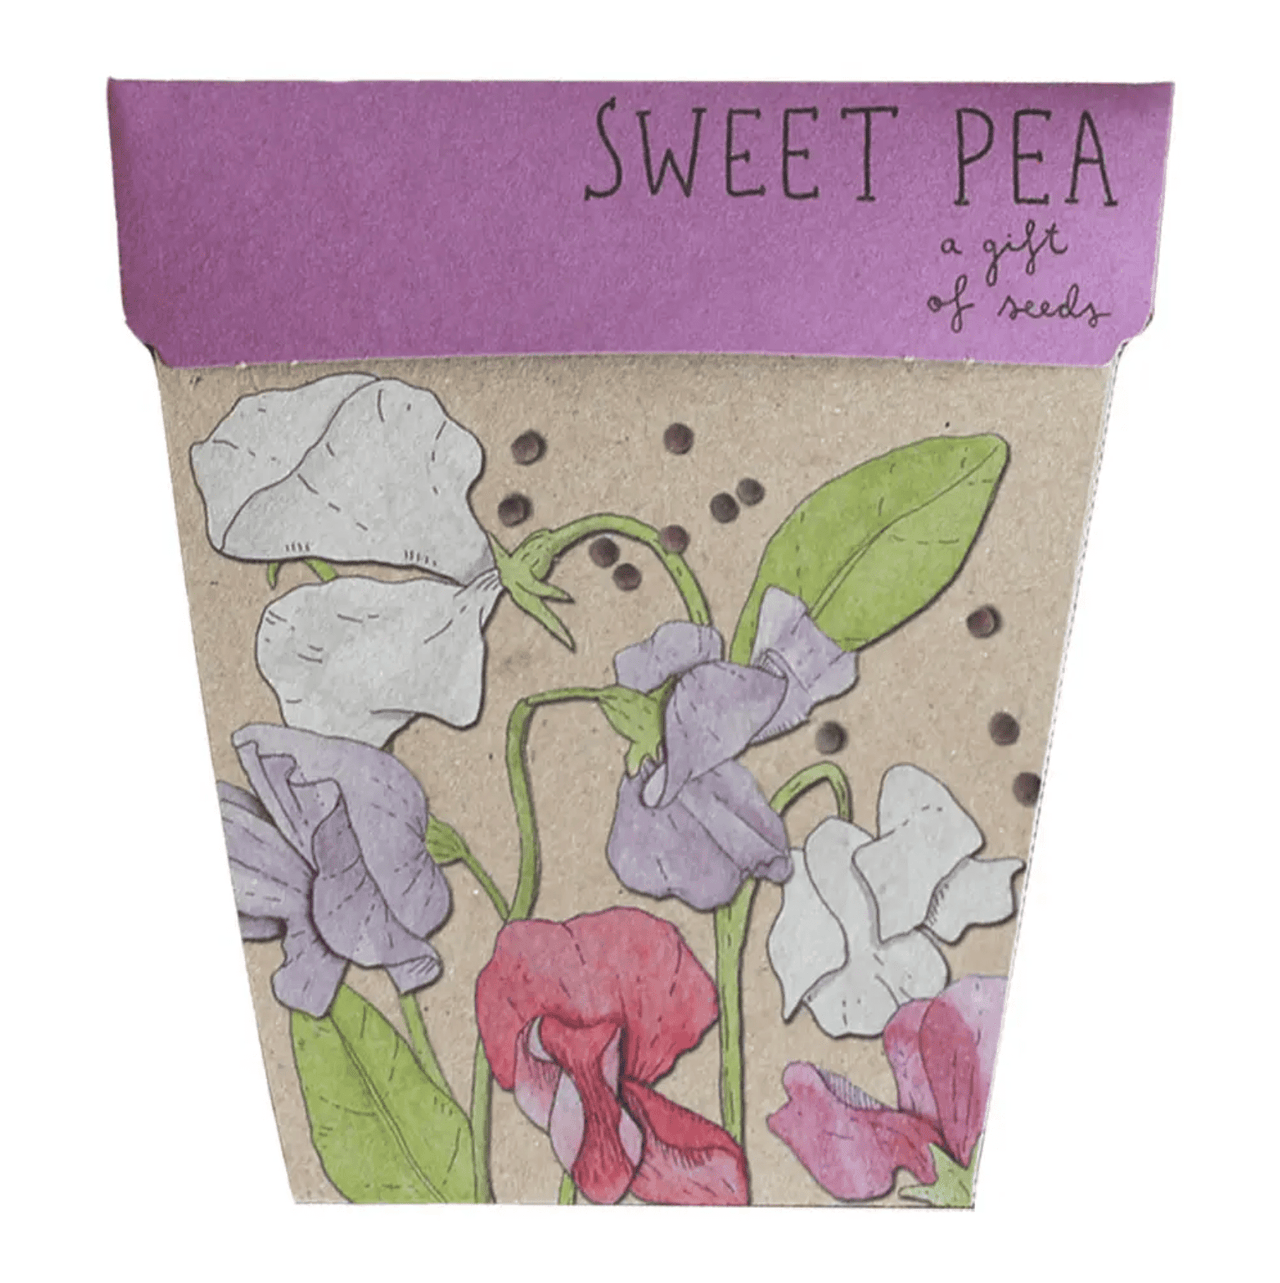 Sow n Sow's Sweet Pea gift box.